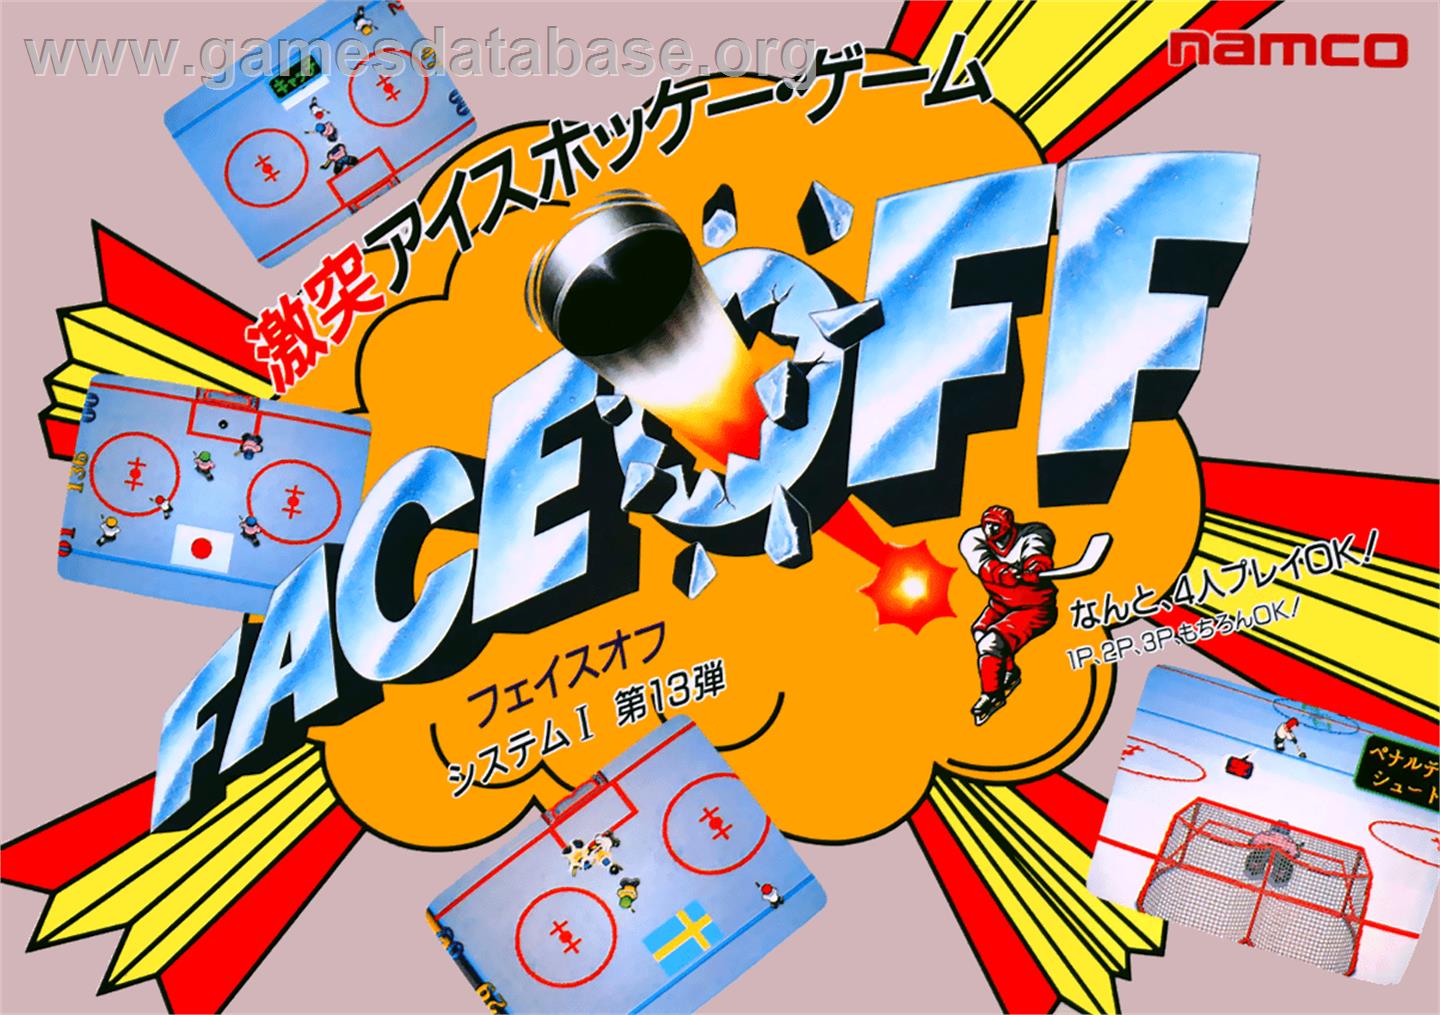 Face Off - Arcade - Artwork - Advert